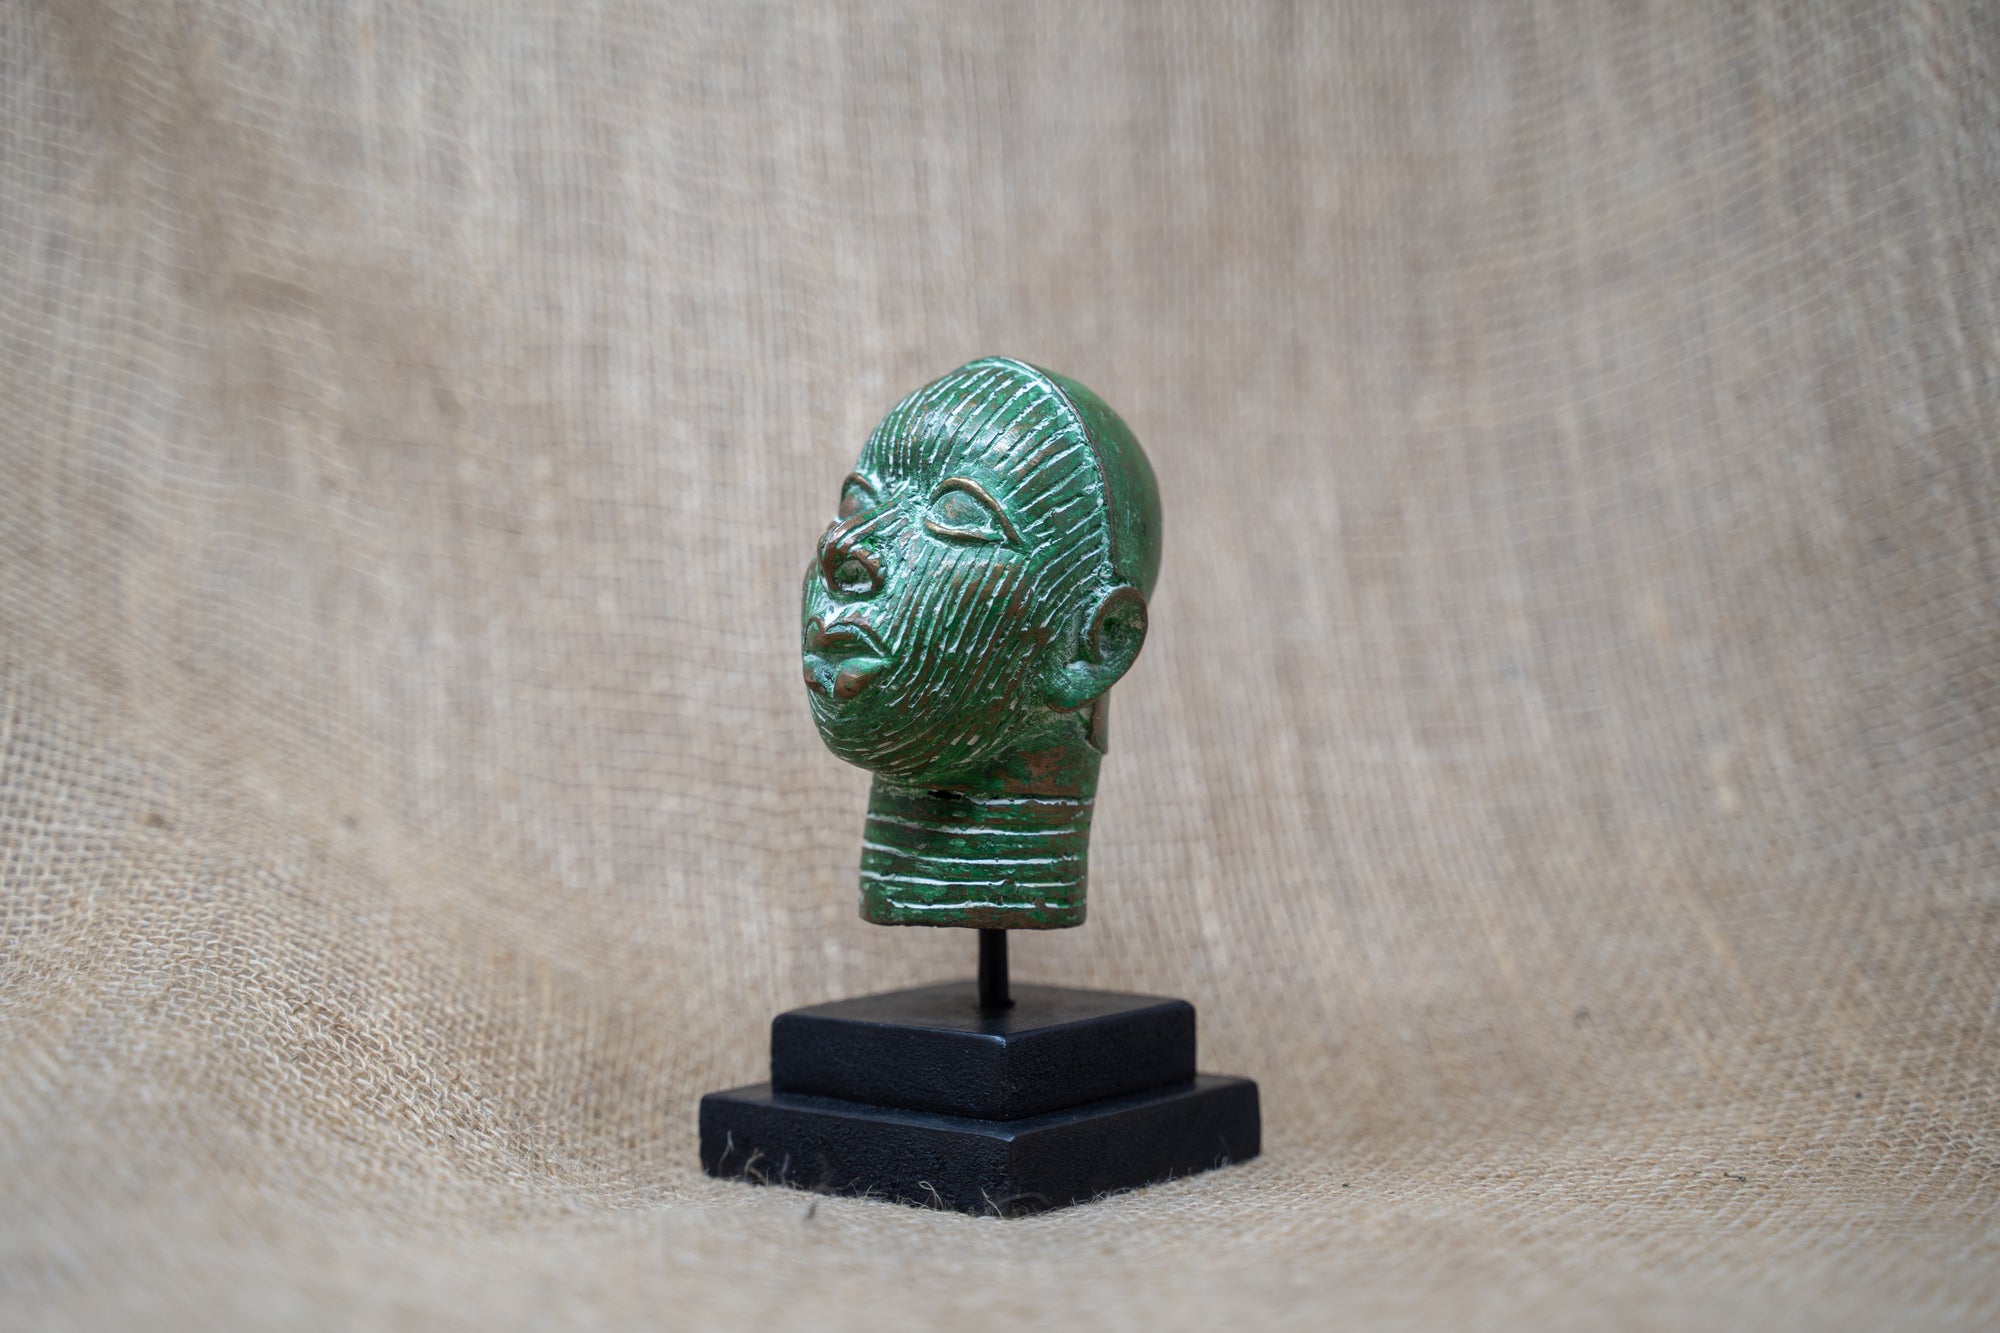 Benin Bronze Head - 37.2